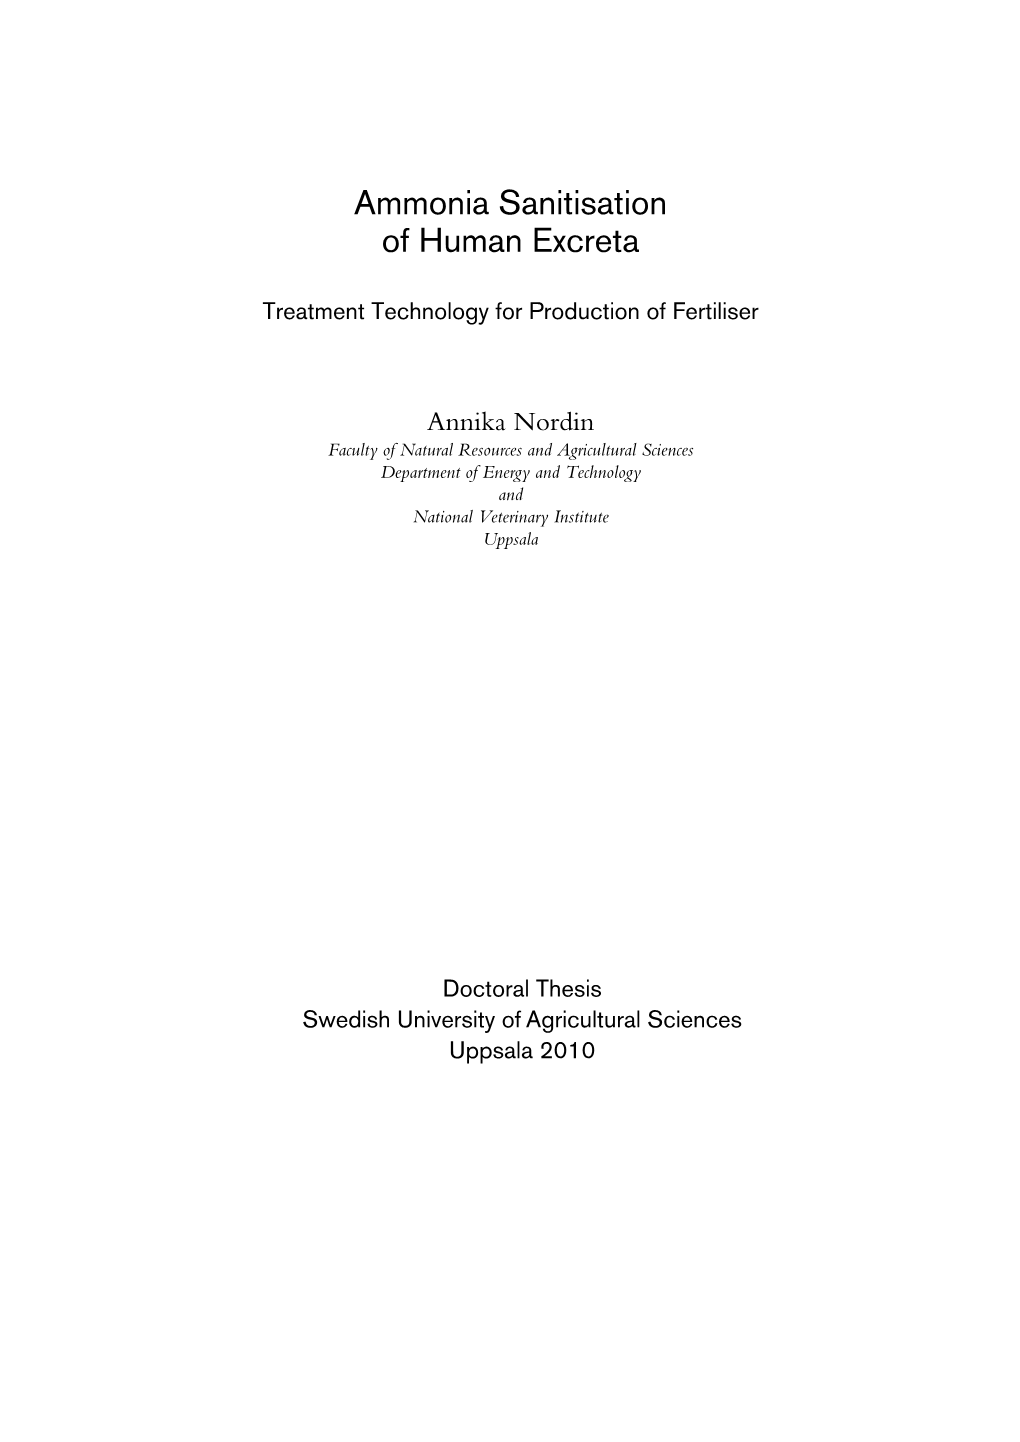 Ammonia Sanitisation of Human Excreta